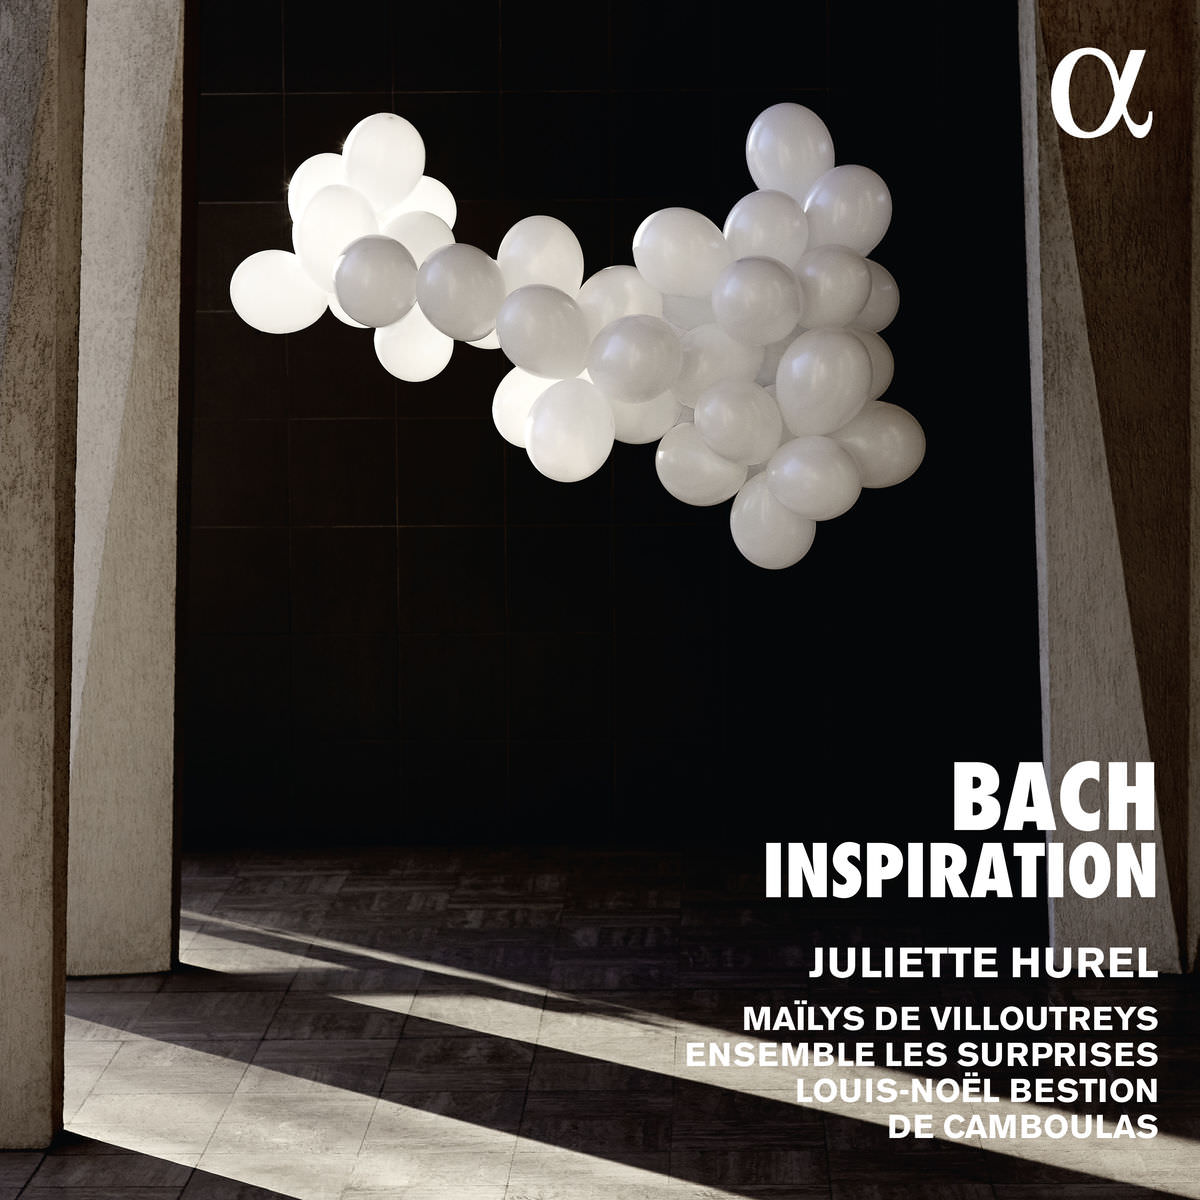 Juliette Hurel, Mailys De Villoutreys, Ensemble les Surprises - Bach Inspiration (2018) [FLAC 24bit/96kHz]